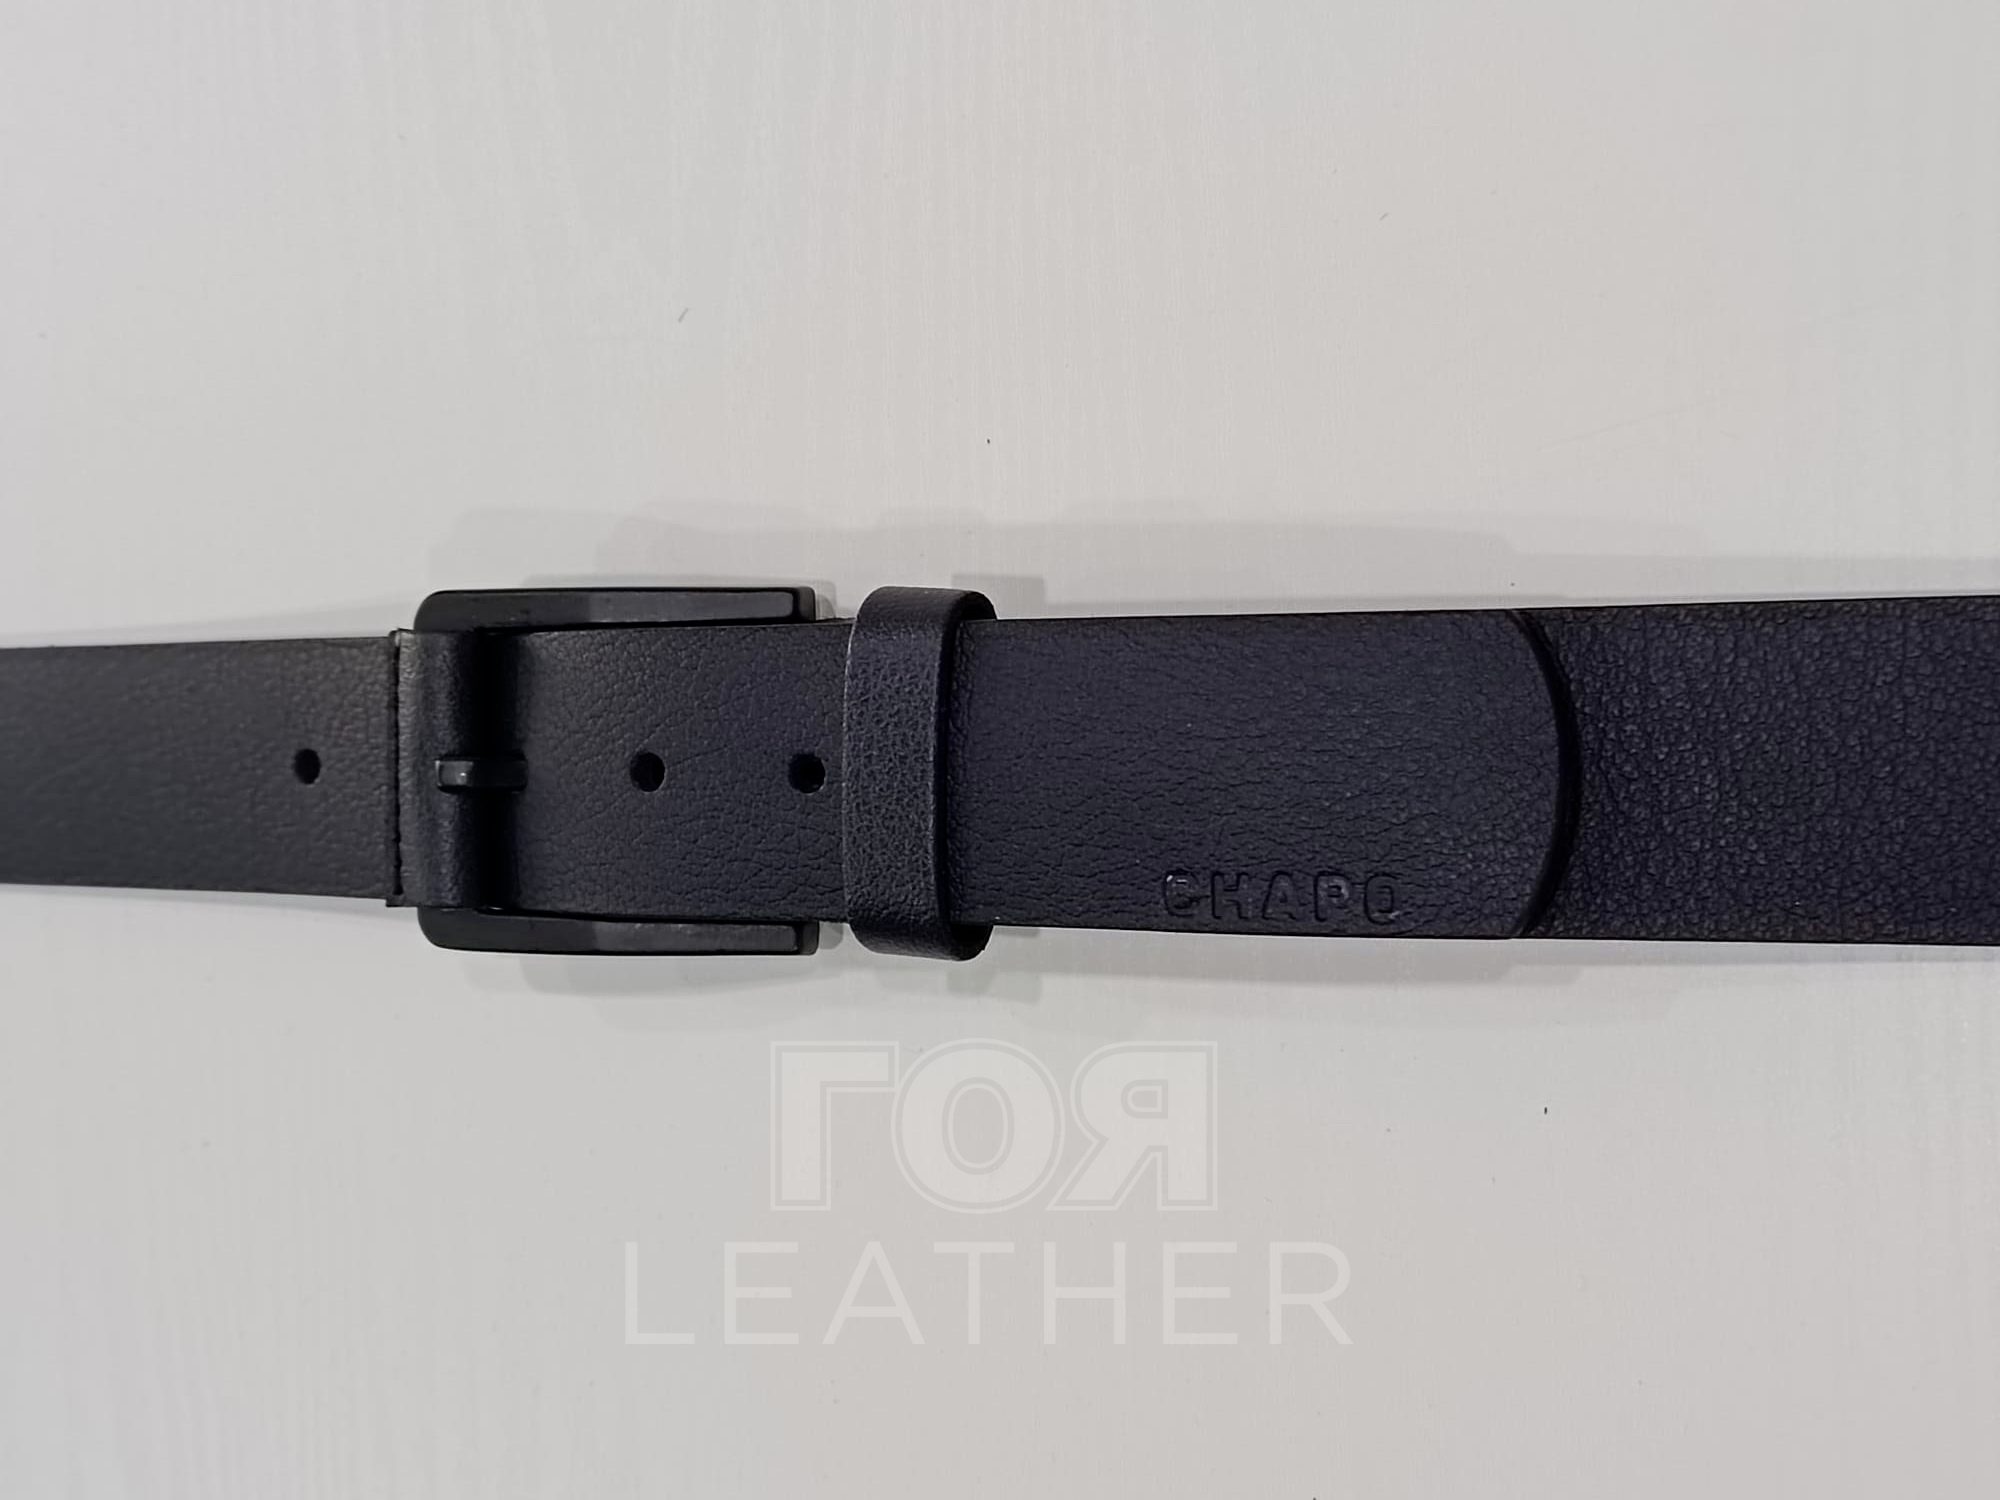 Колан естествена кожа- 16 в цвят тъмно син от ГОЯ Leather. Нов модел колан изработен от 100% естествена кожа. Моделът се предлага в седем дължини, от 100 до 130 см.